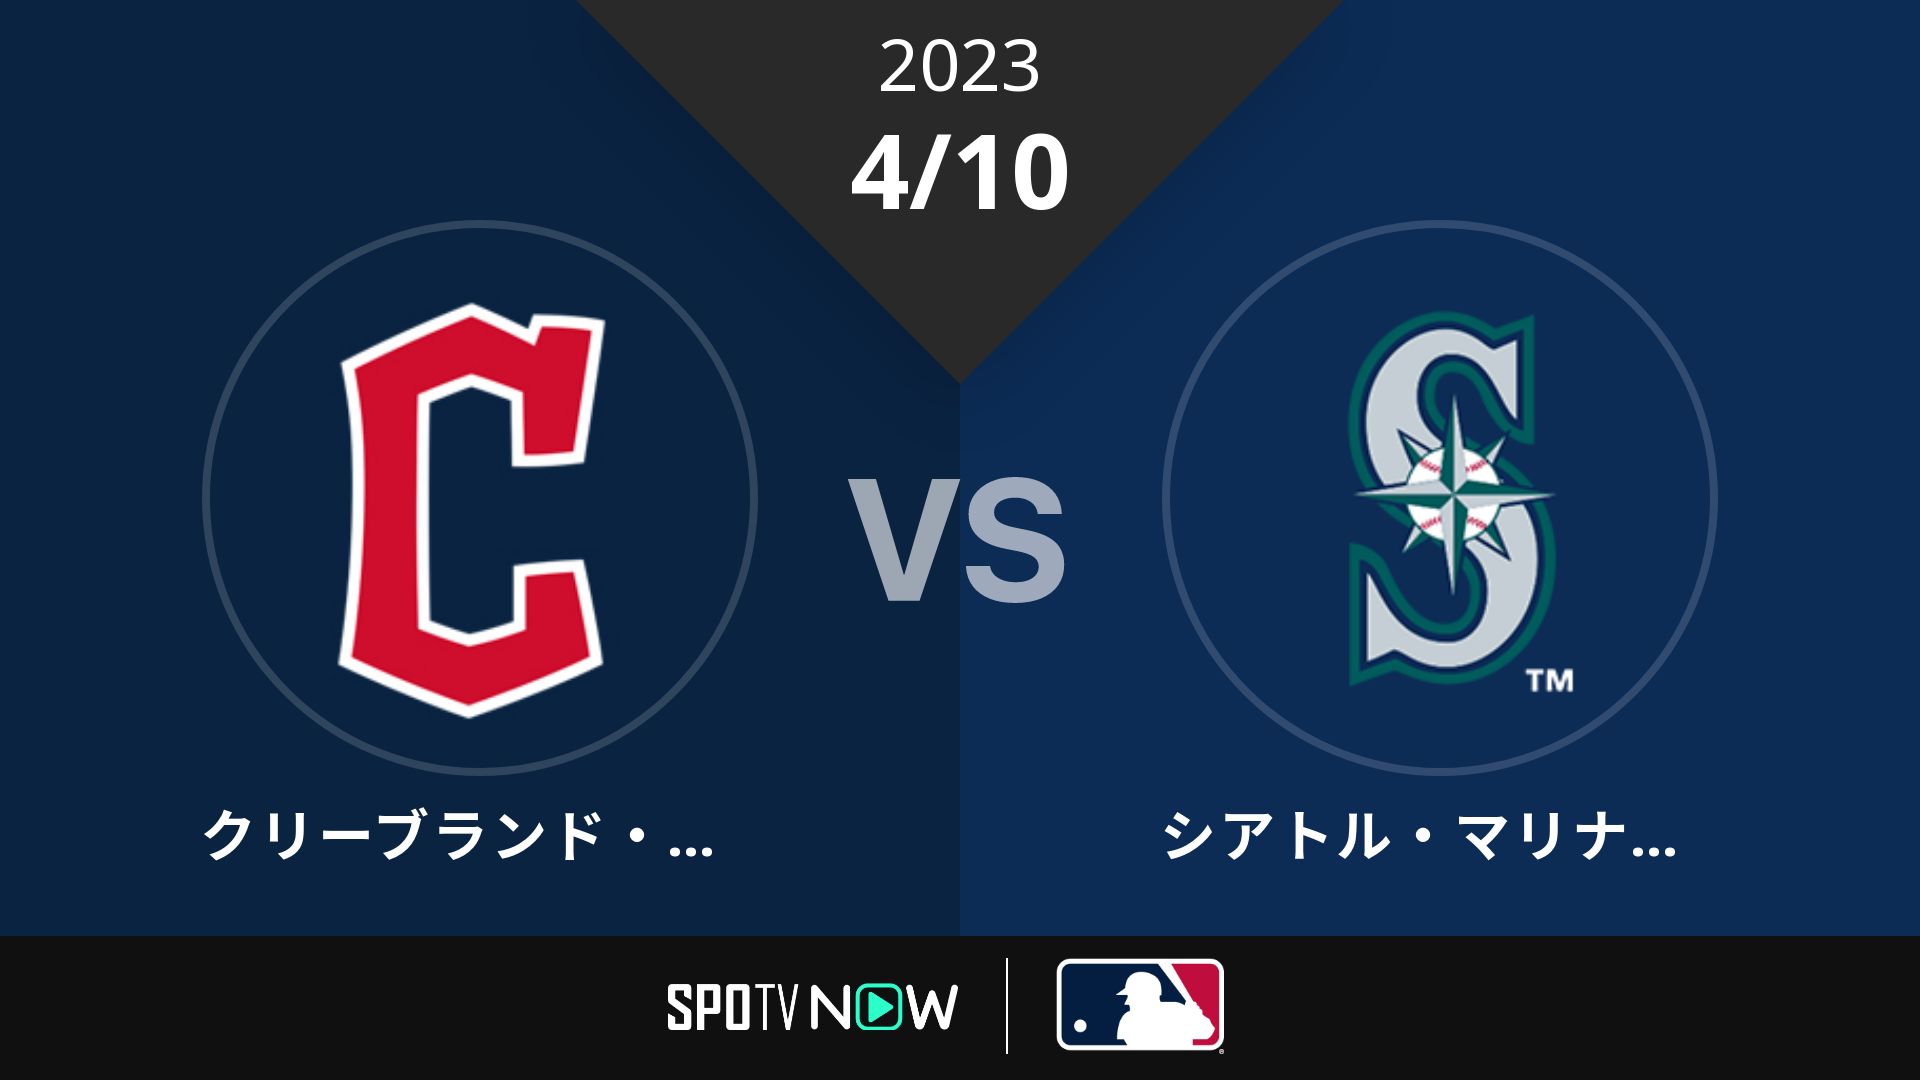 2023/4/10 ガーディアンズ vs マリナーズ [MLB]